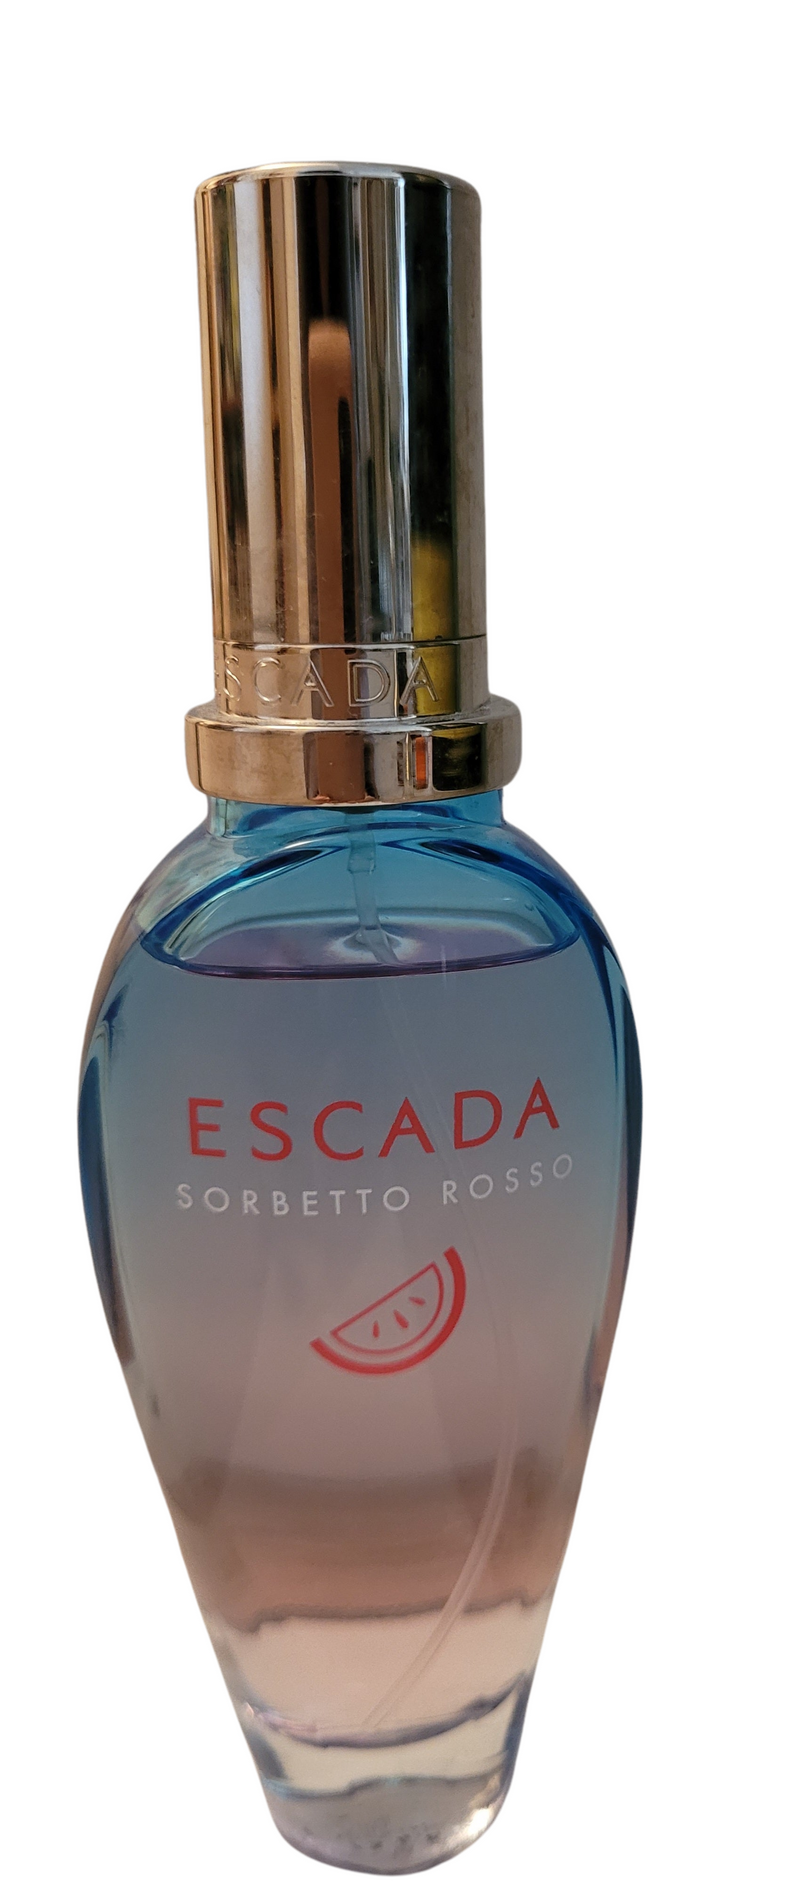 Sorbetto Rosso - Escada - Eau de toilette - 49/50ml